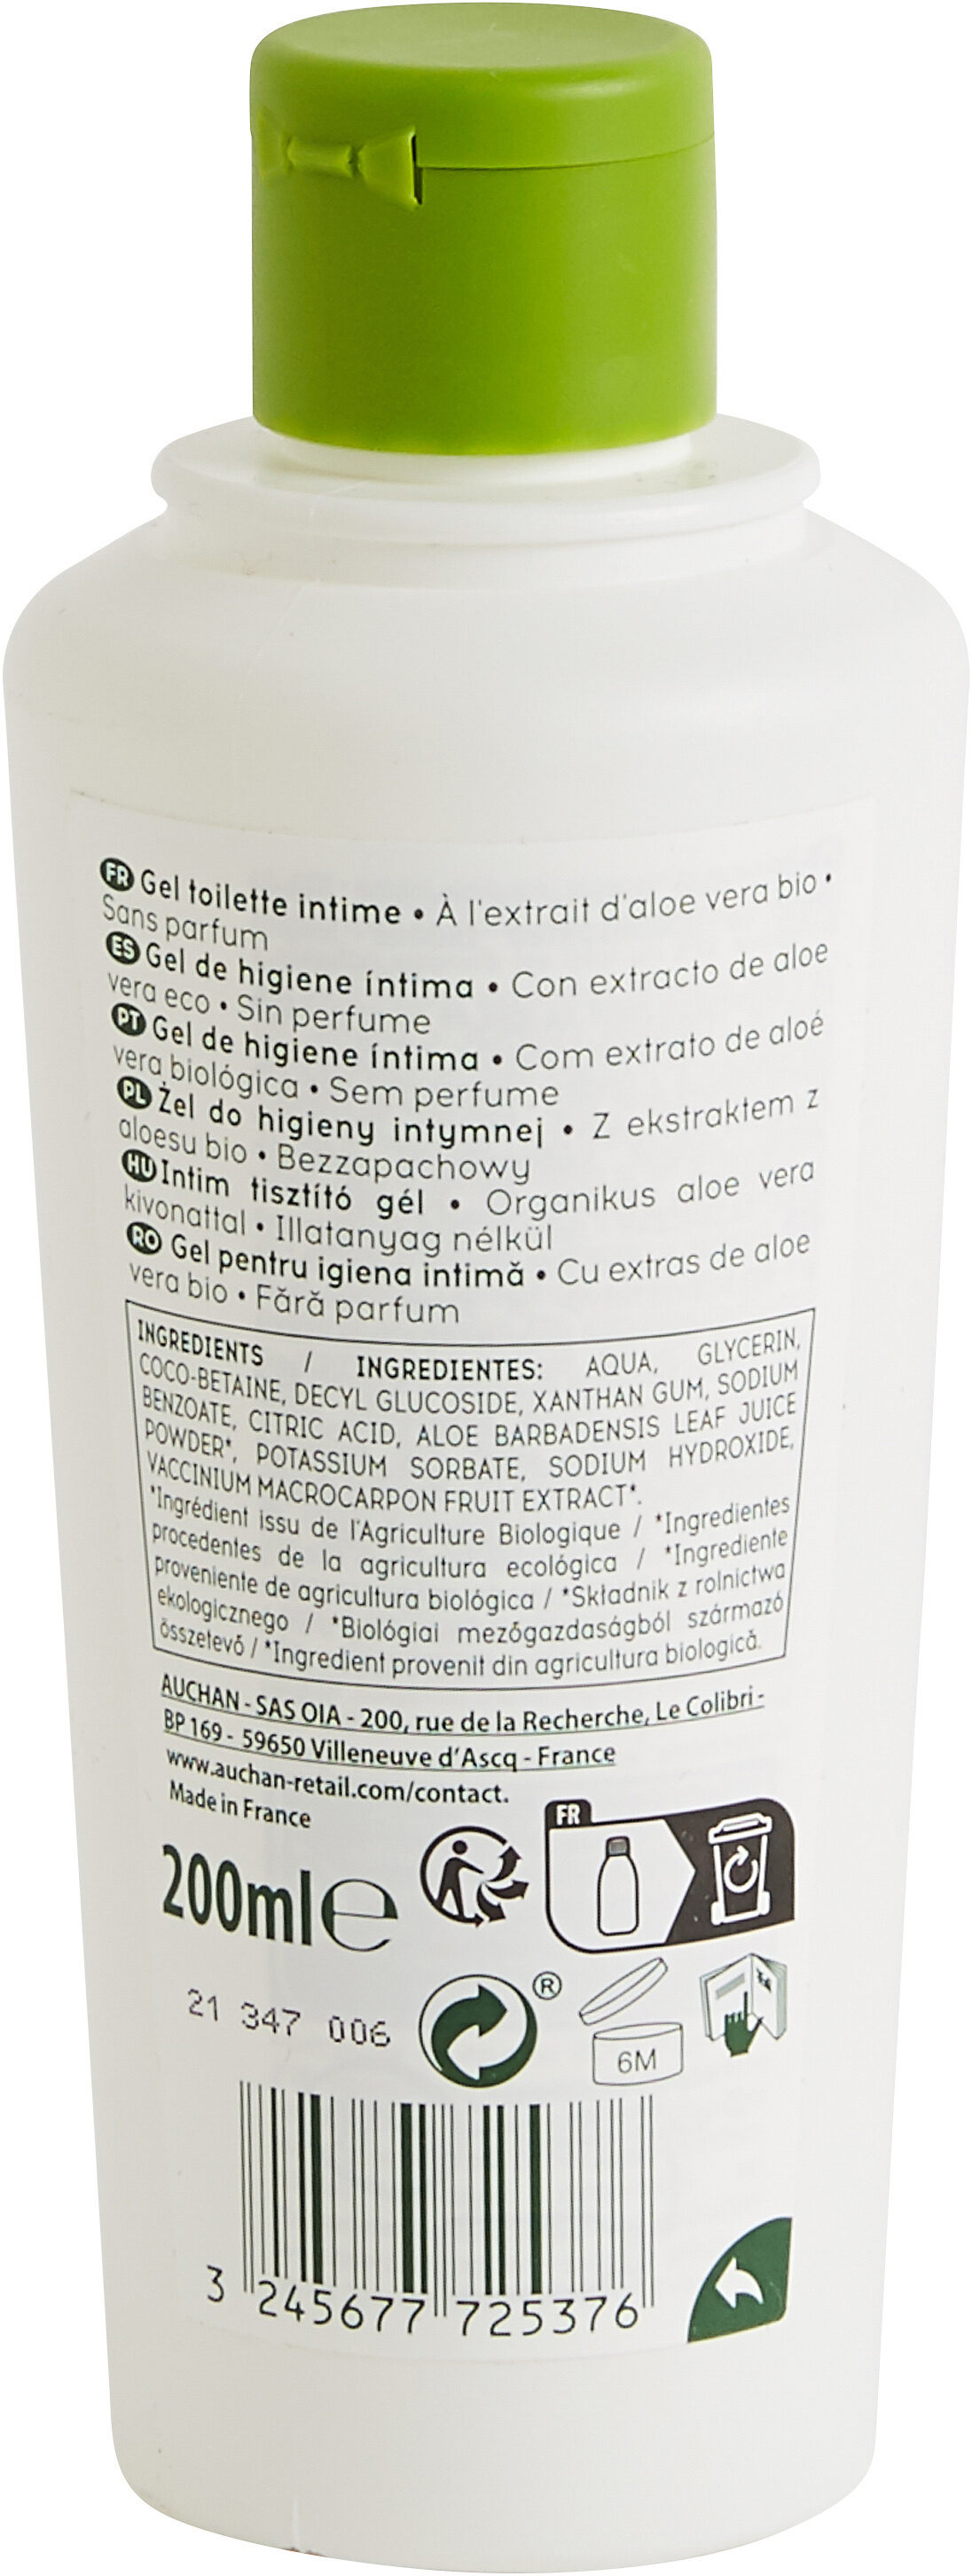 COSMIA BIO GEL TOILETTE INTIMEà l'extrait d'aloe vera biosans parfumpréserve et respecte l'équilibre intime - Produit - fr